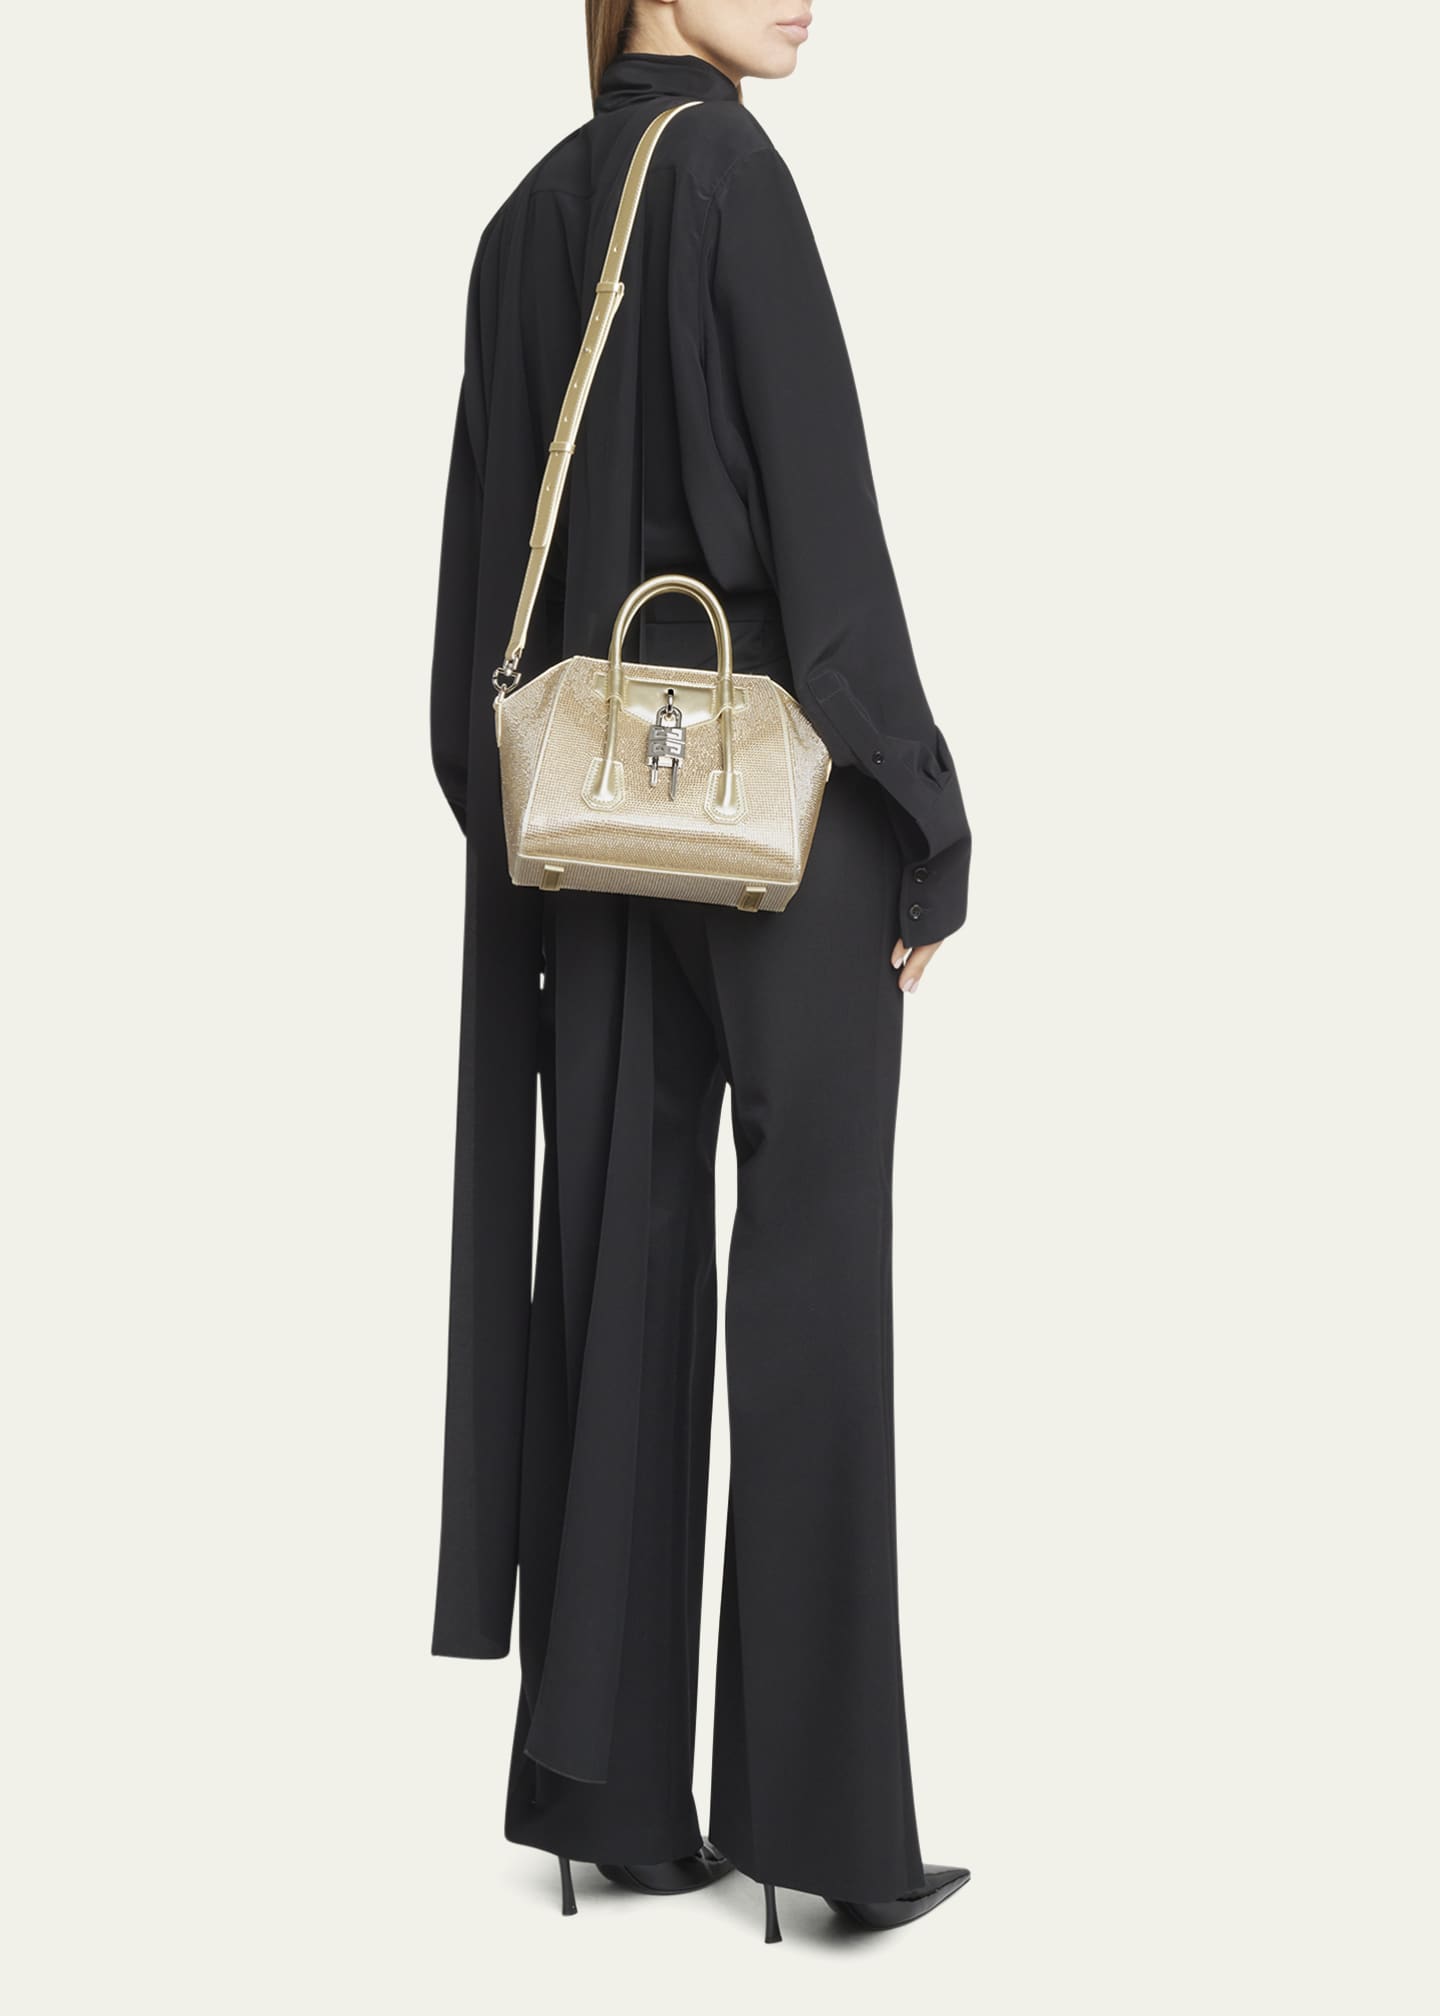 nano Antigona mini crossbody leather bag, Givenchy